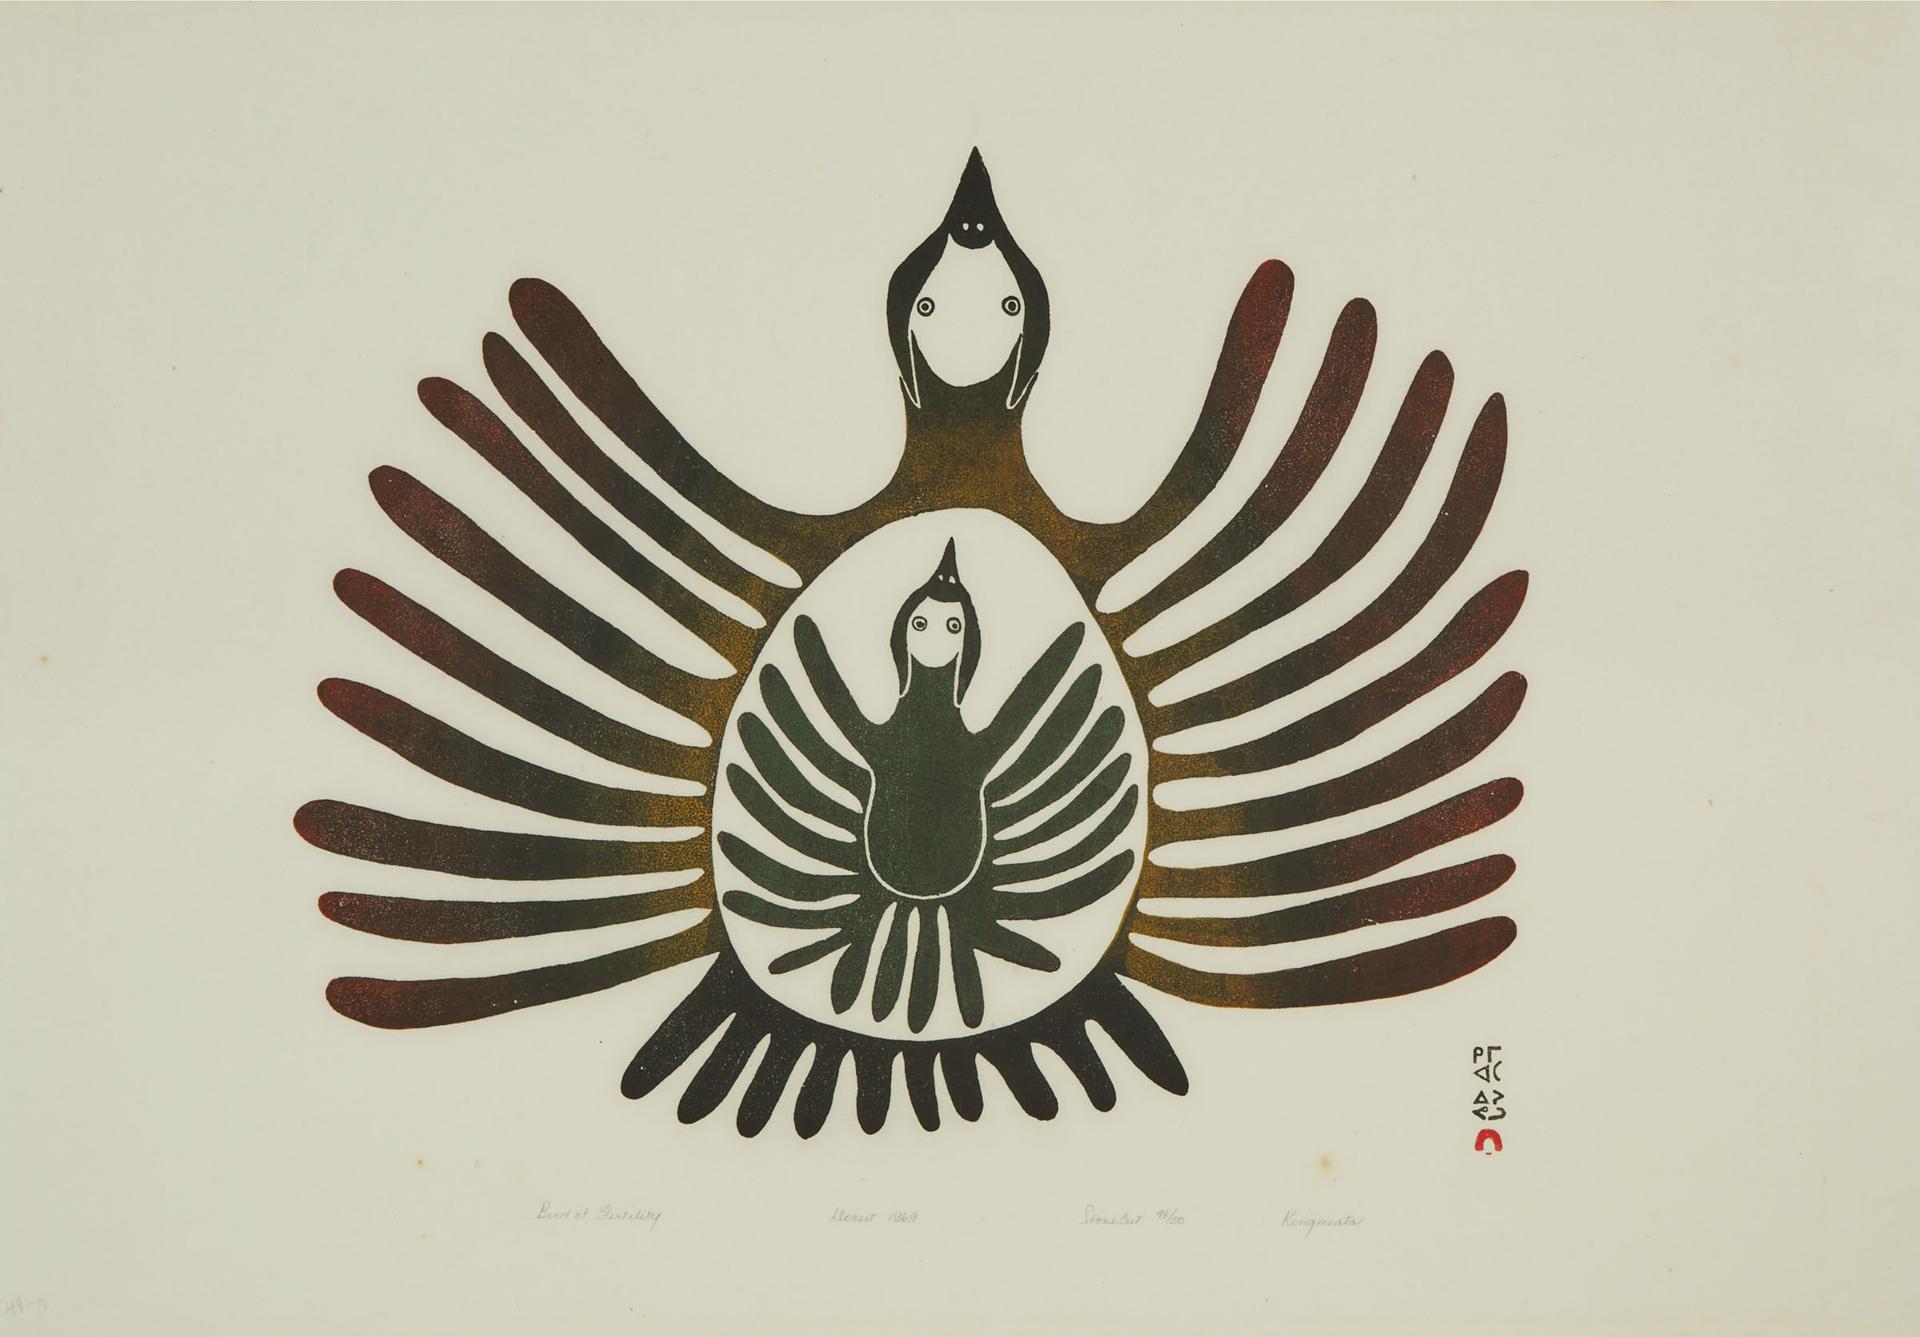 Kingmeata Etidlooie (1915-1989) - Bird Of Fertility, 1969